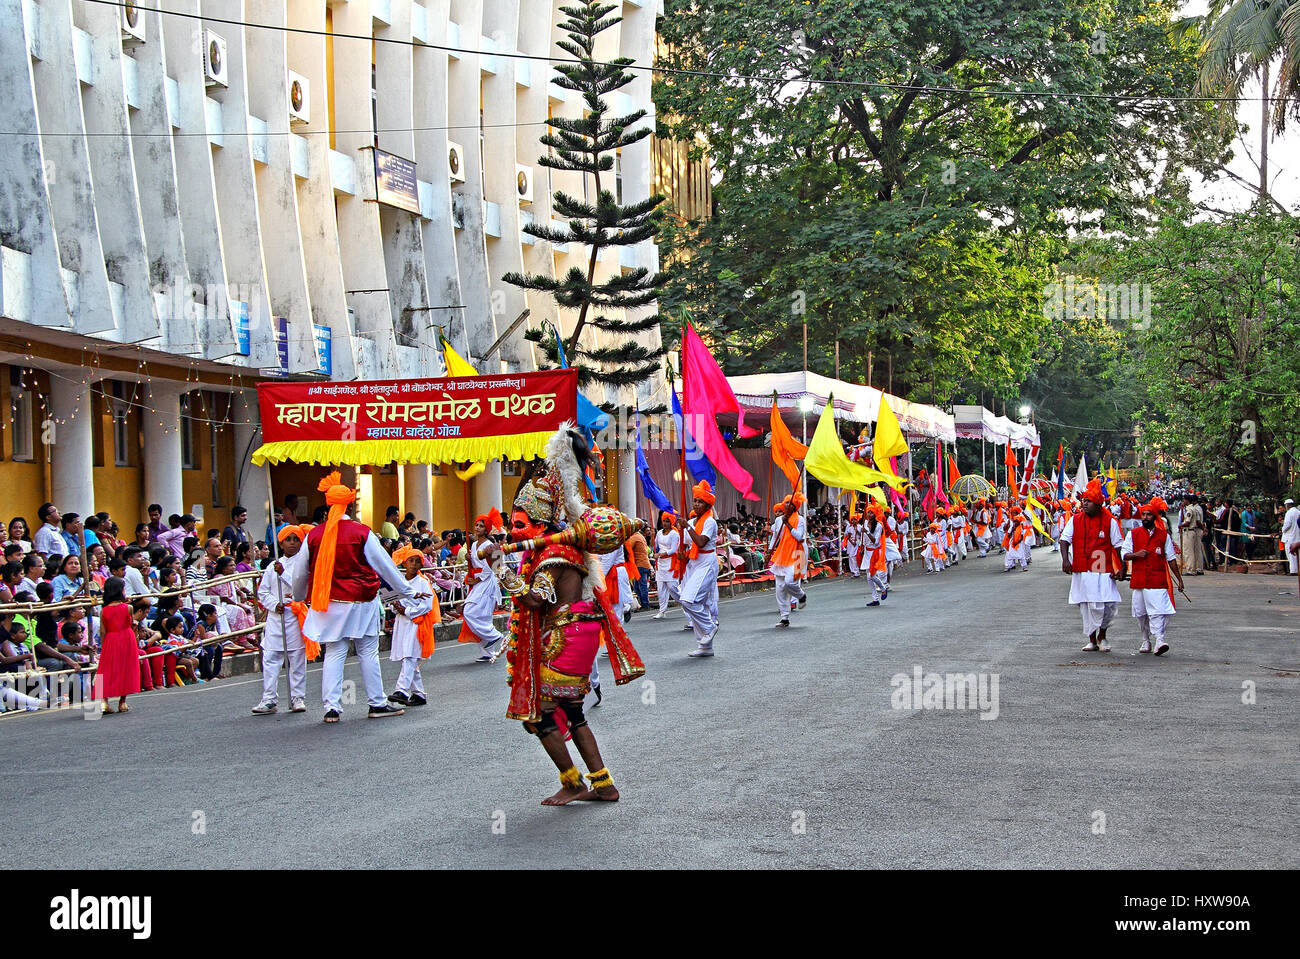 Kulturelle Prozession mit hinduistischen mythologischen Figur bei der traditionellen jährlichen Shigmo Festival Parade, die das kulturelle Erbe von Goa präsentiert Stockfoto